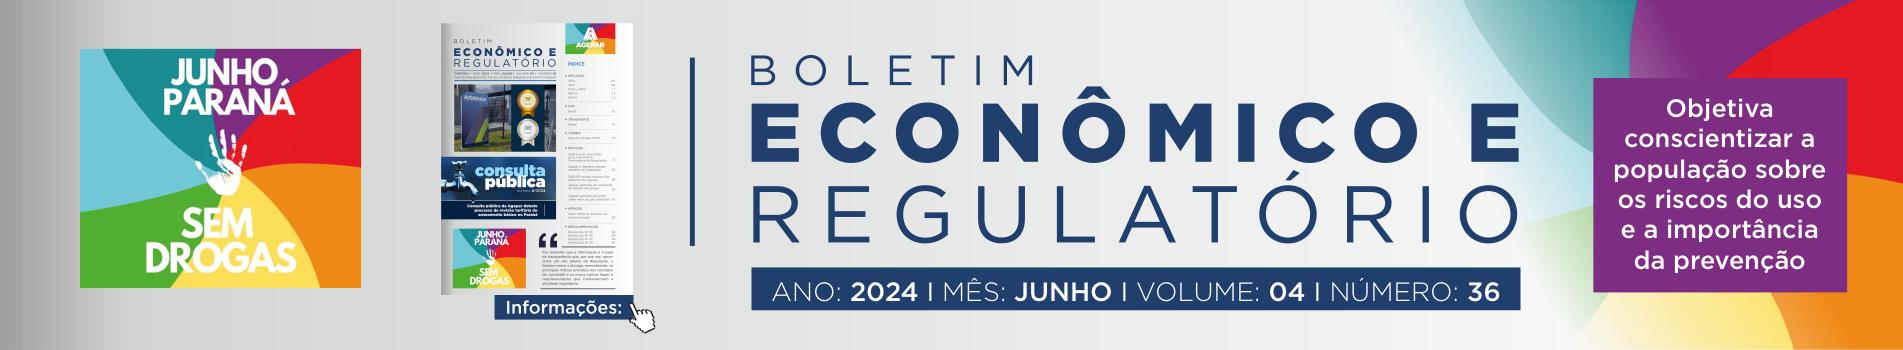 Boletim Econômico e Regulatório Número 36 - junho 2024